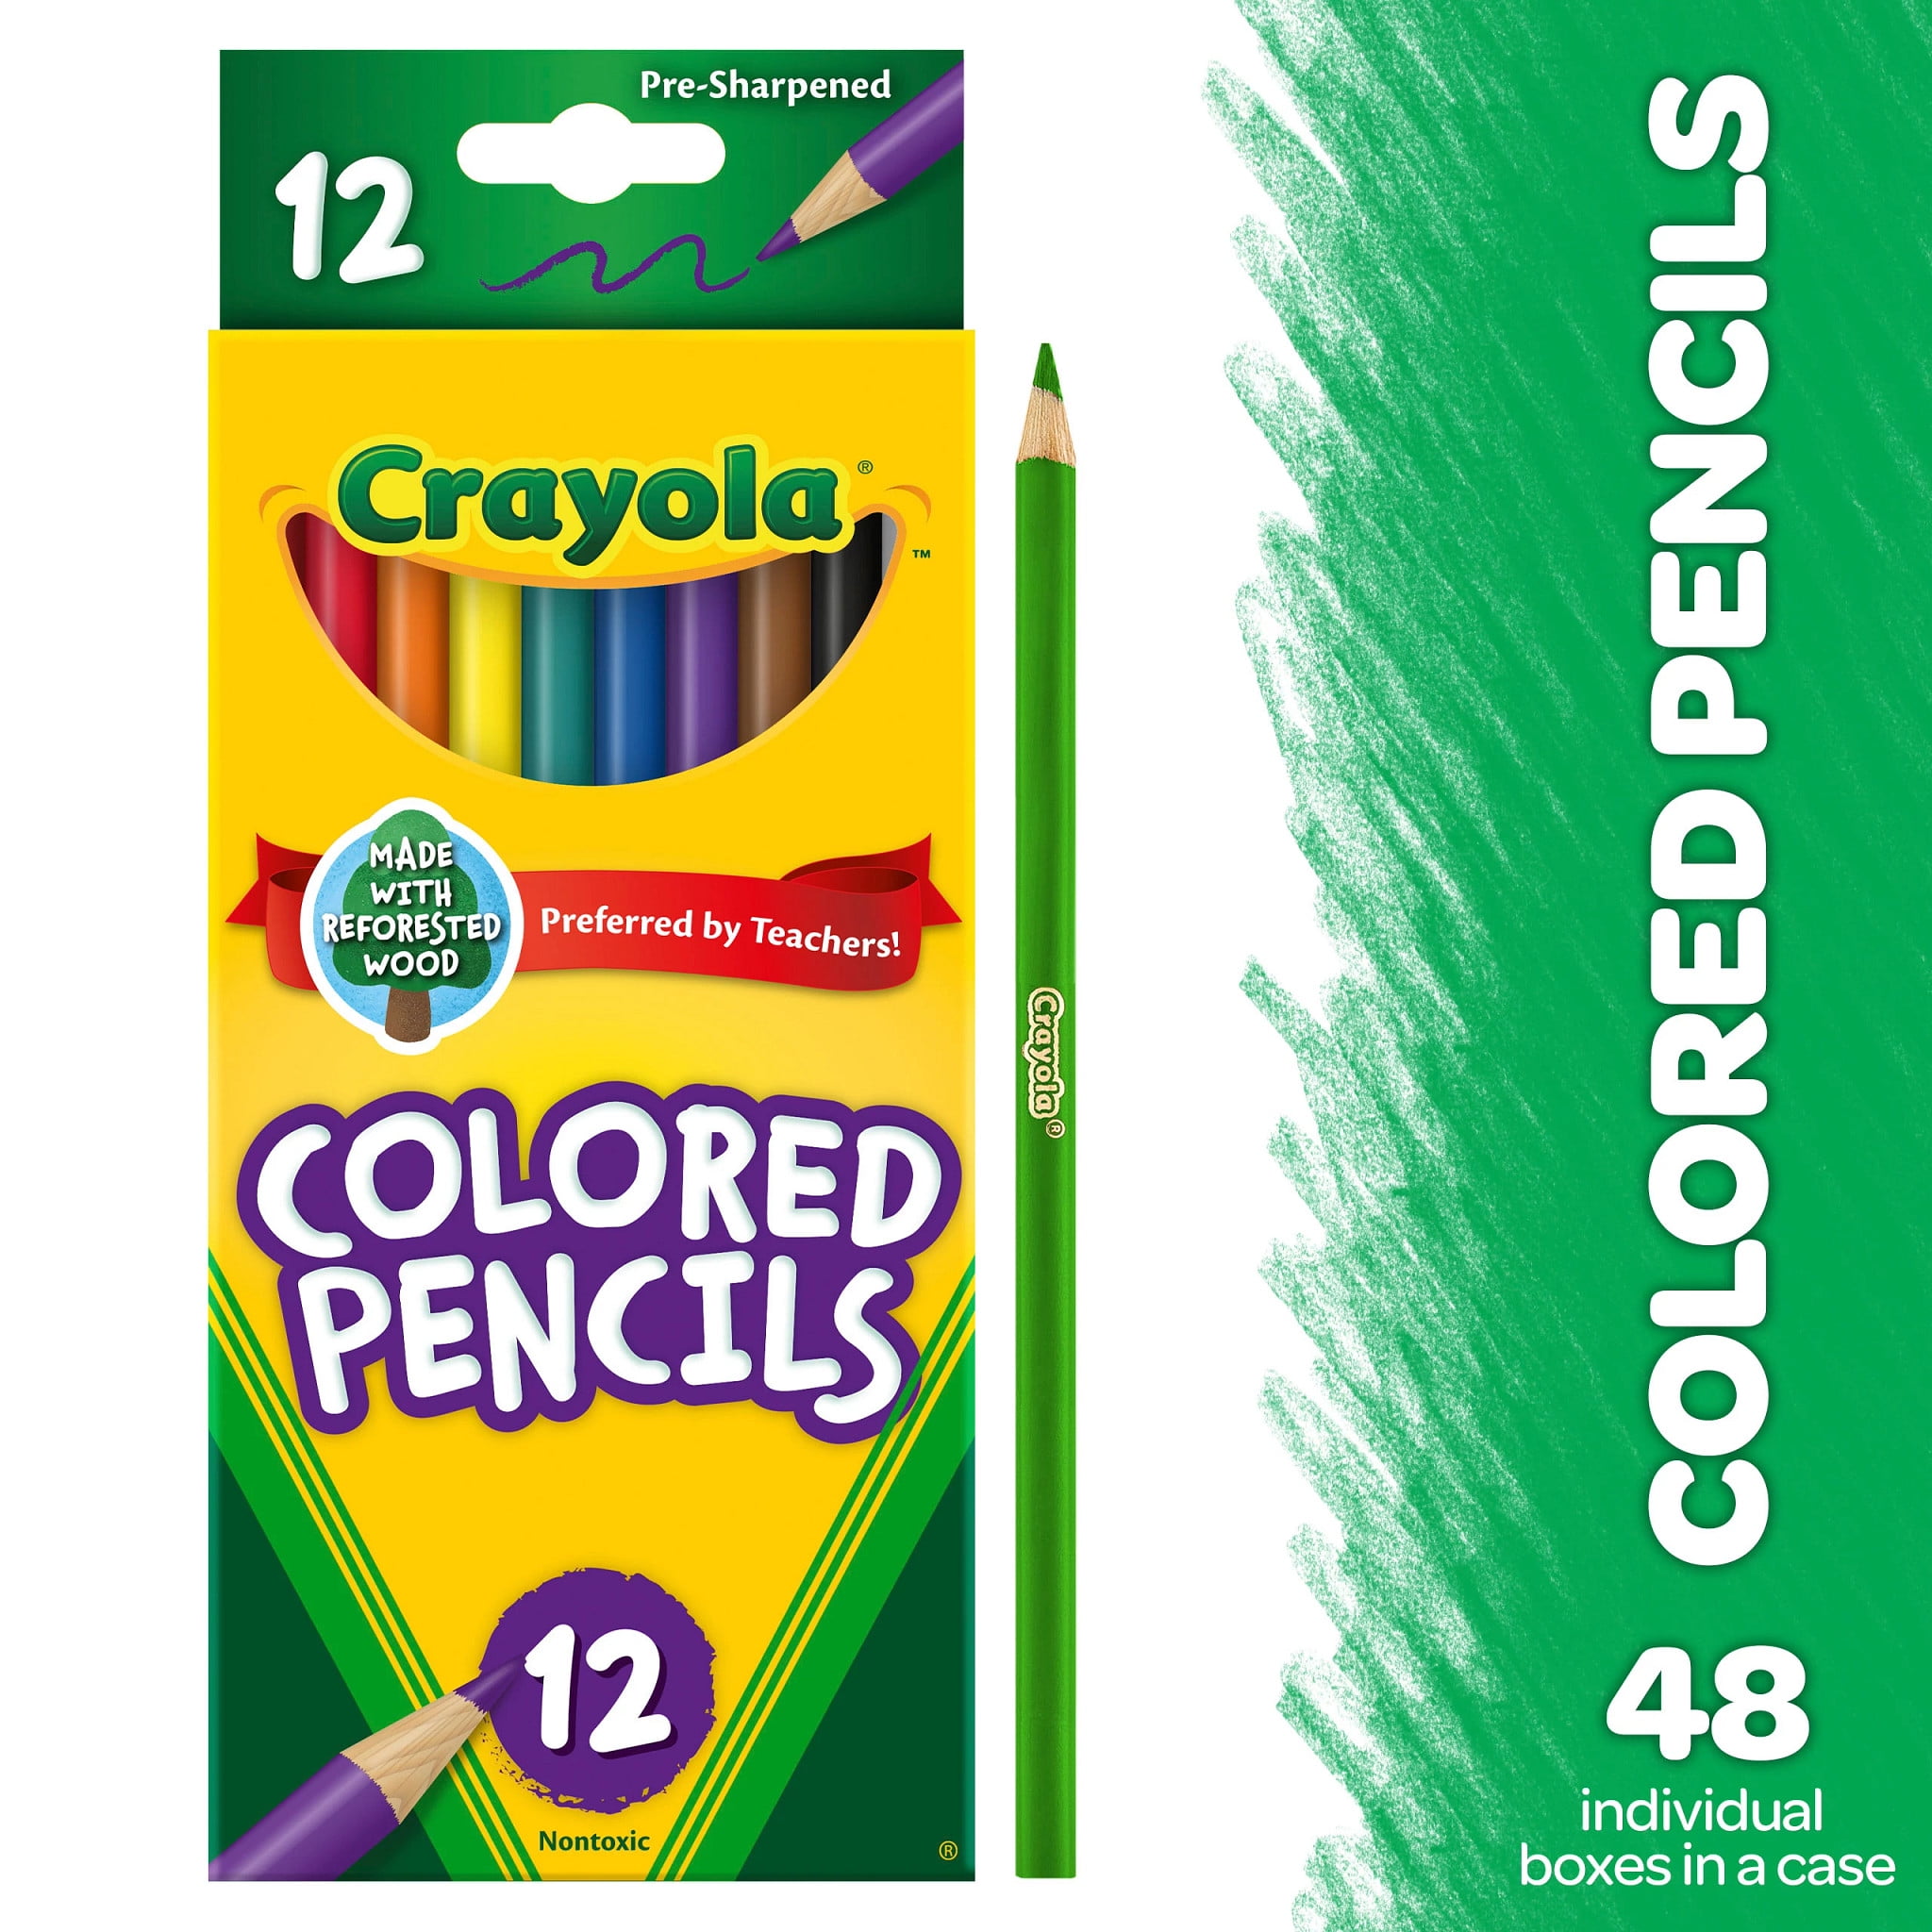 Watercolor Pencil Set, Coloring Supplies, 12ct, Crayola.com